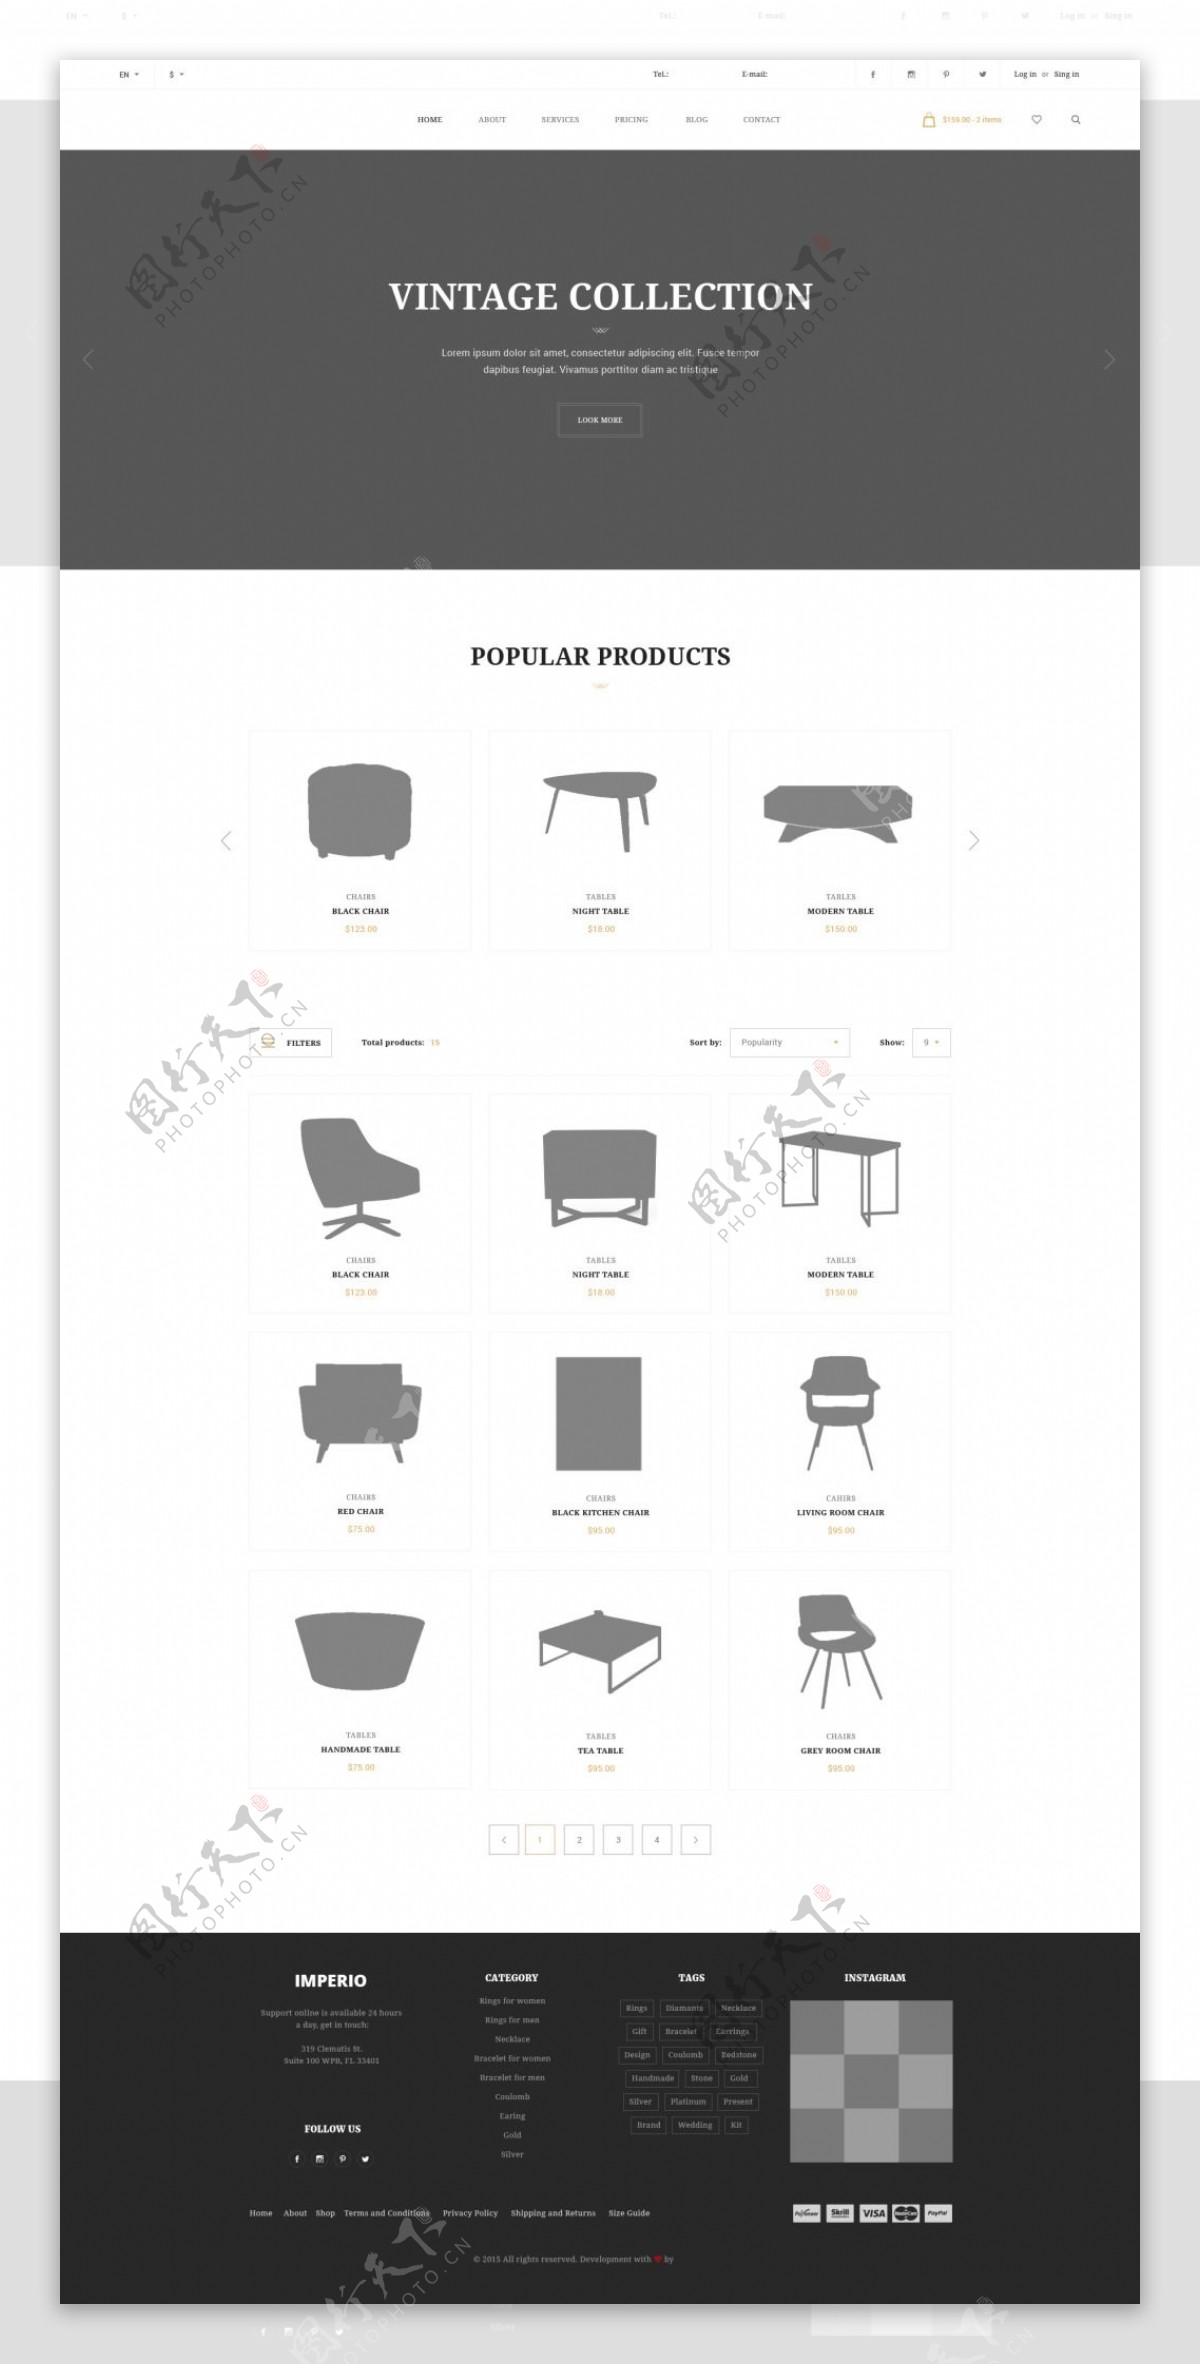 办公用品电商网站产品列表页设计psd模板